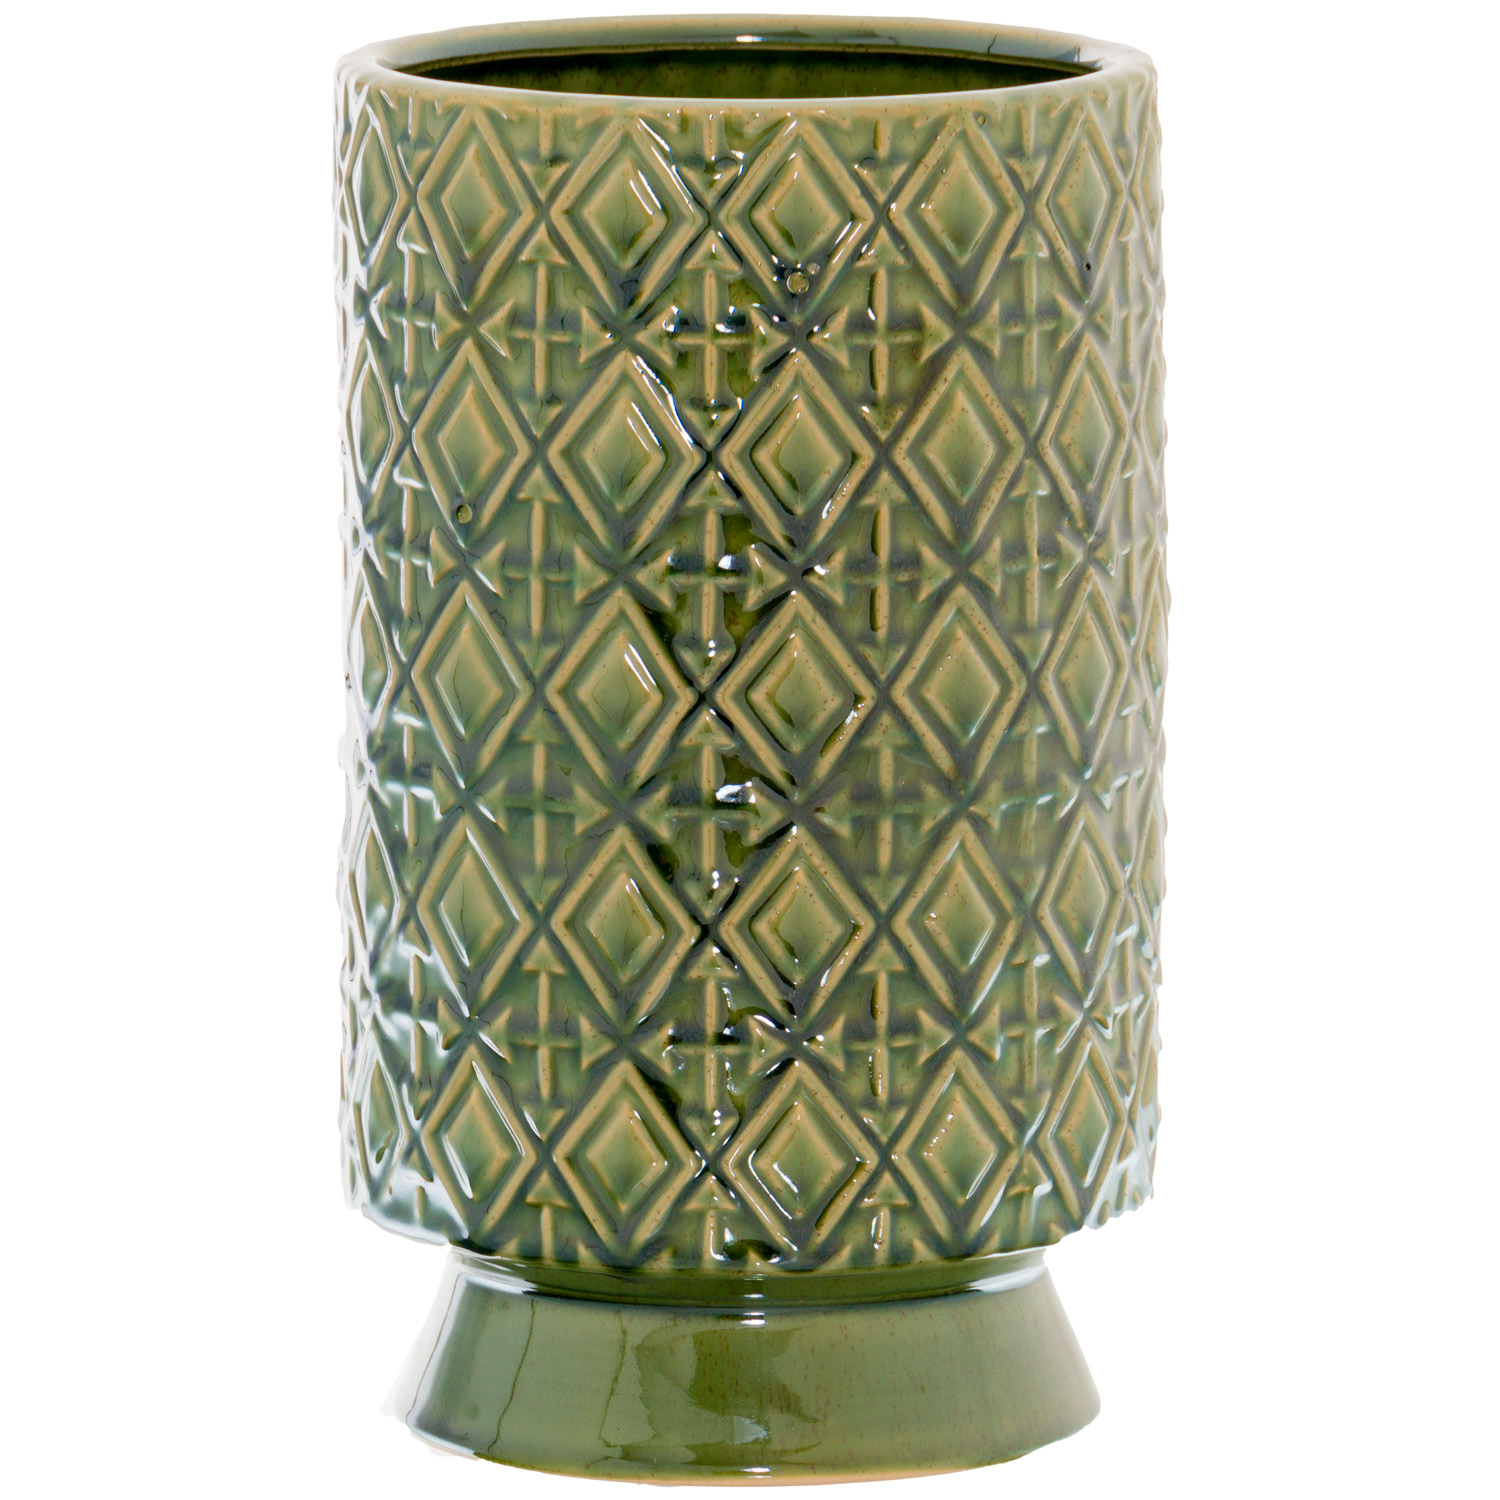 Seville Collection Olive Paragon Vase - Image 1